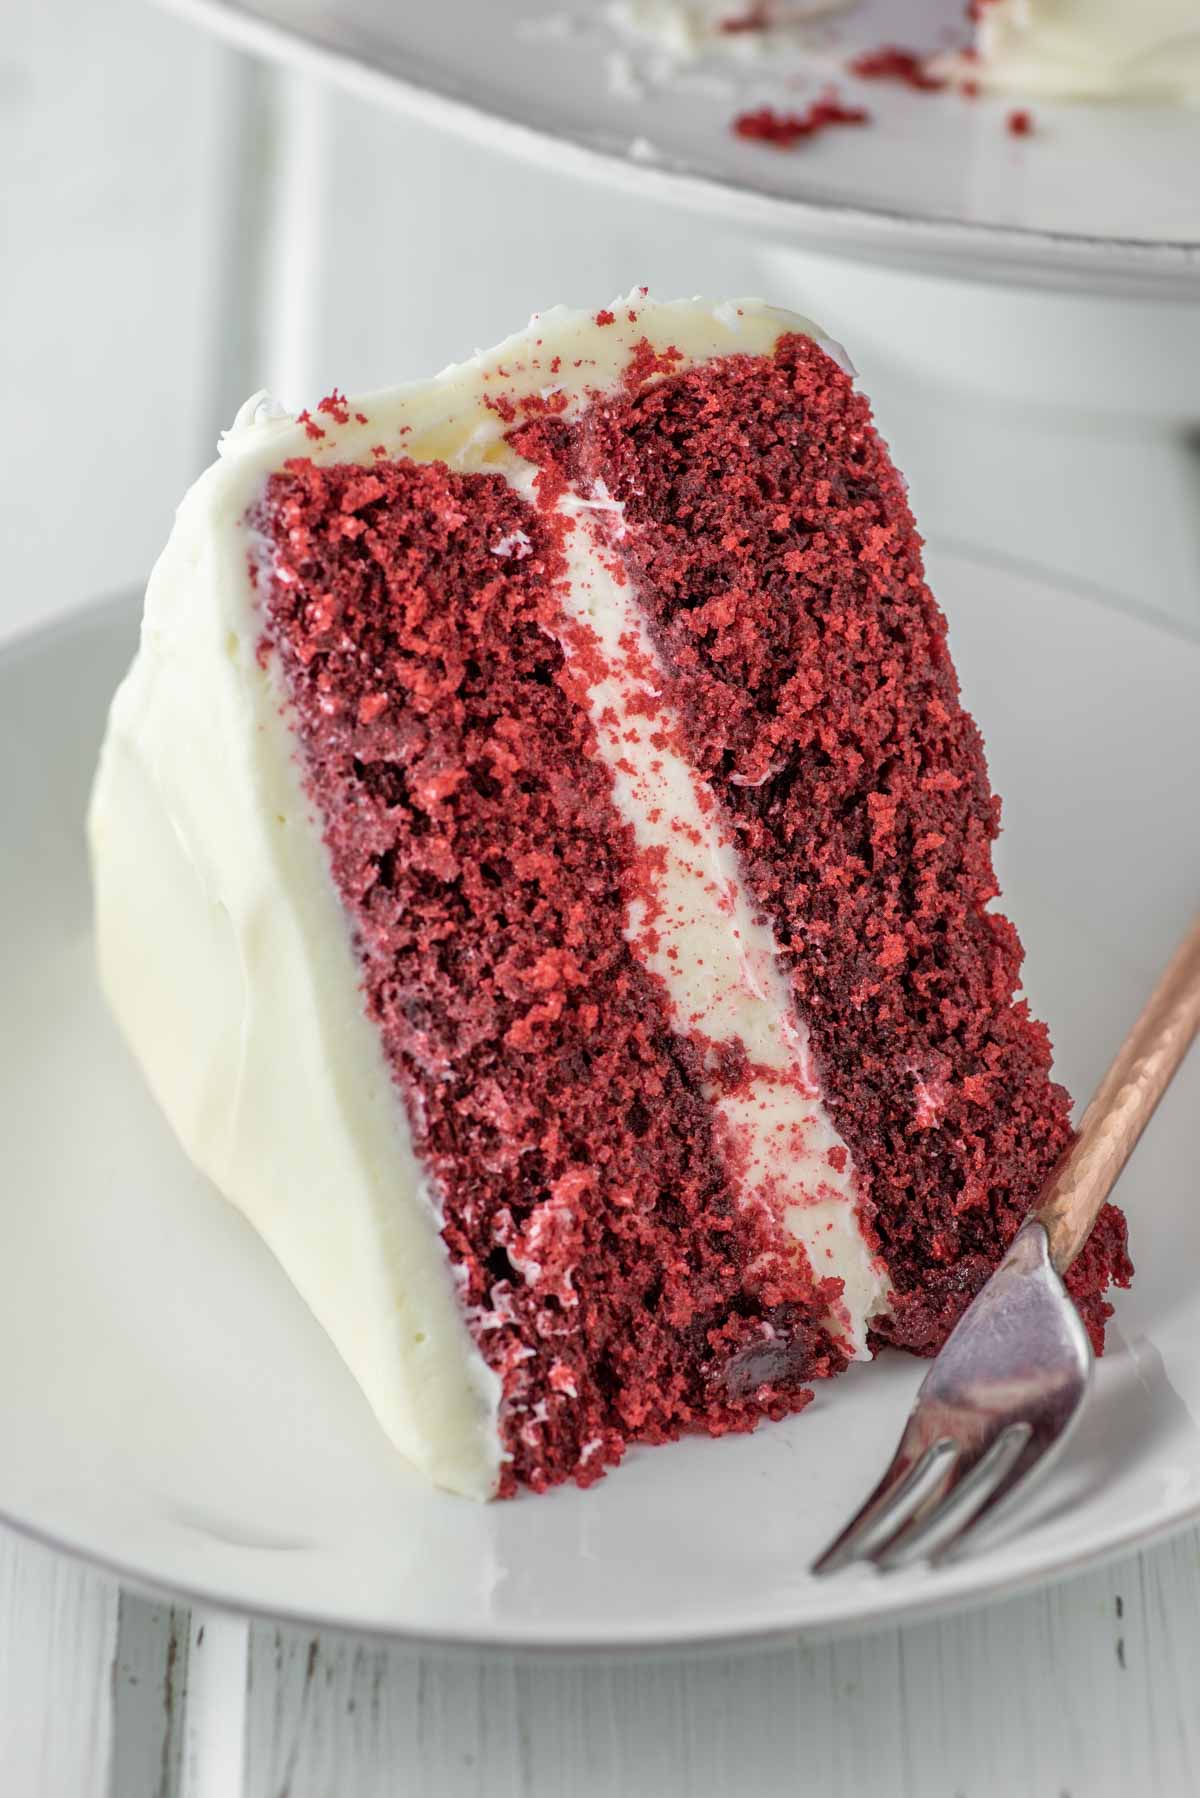 The History Of Red Velvet Cake